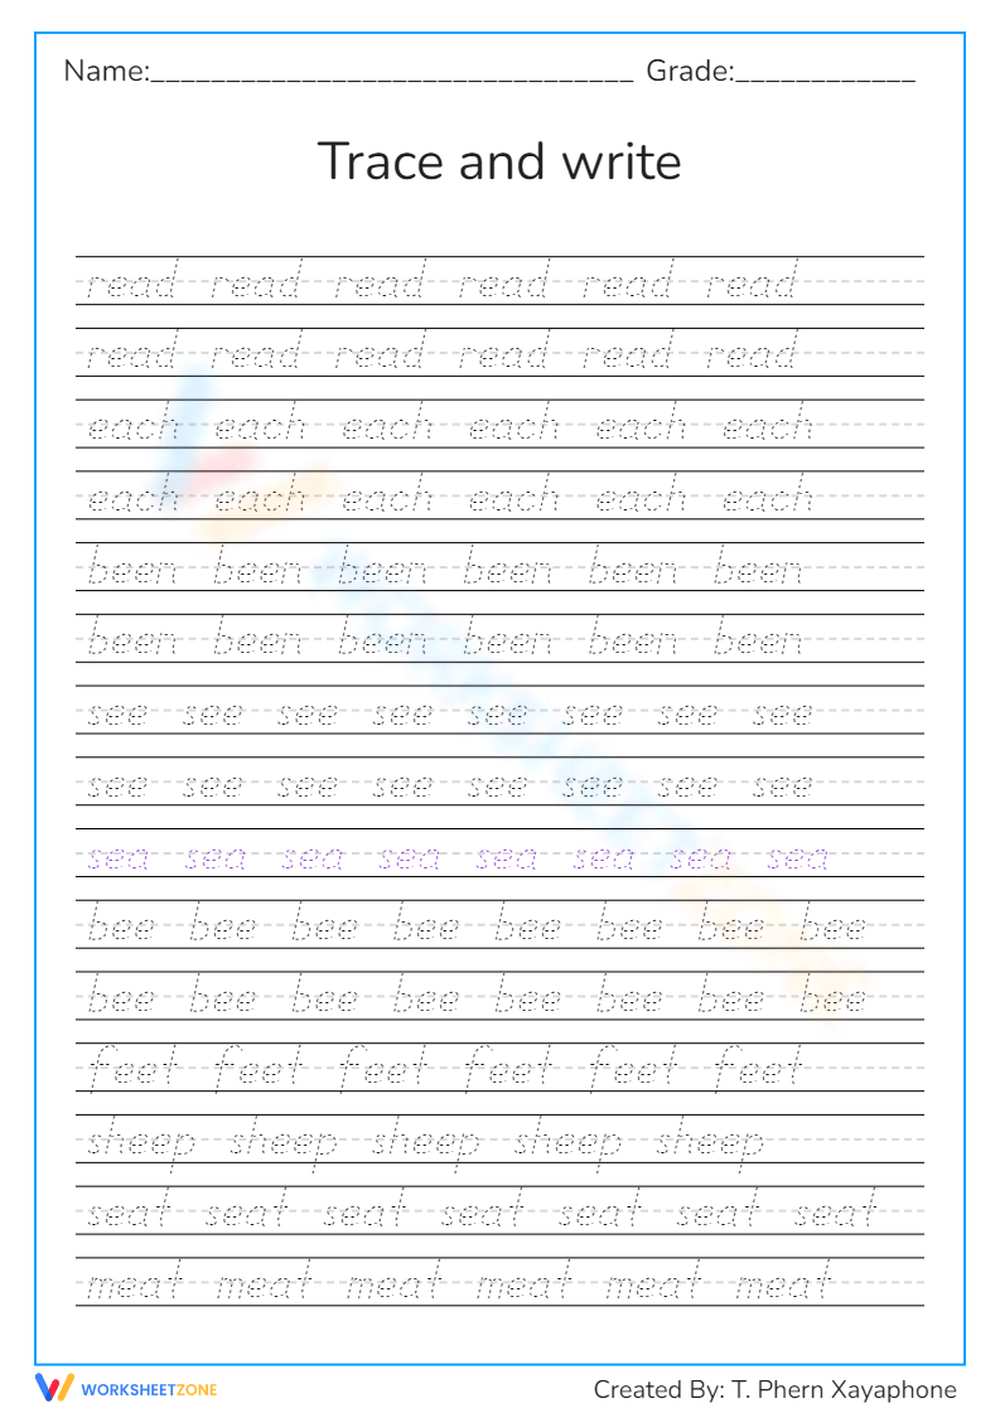 Tall Handwriting Practice Sheets, Printable Handwriting Worksheets,  Alphabet Writing Practice, ABC Letter Tracing, Improve Handwriting -   Hong Kong